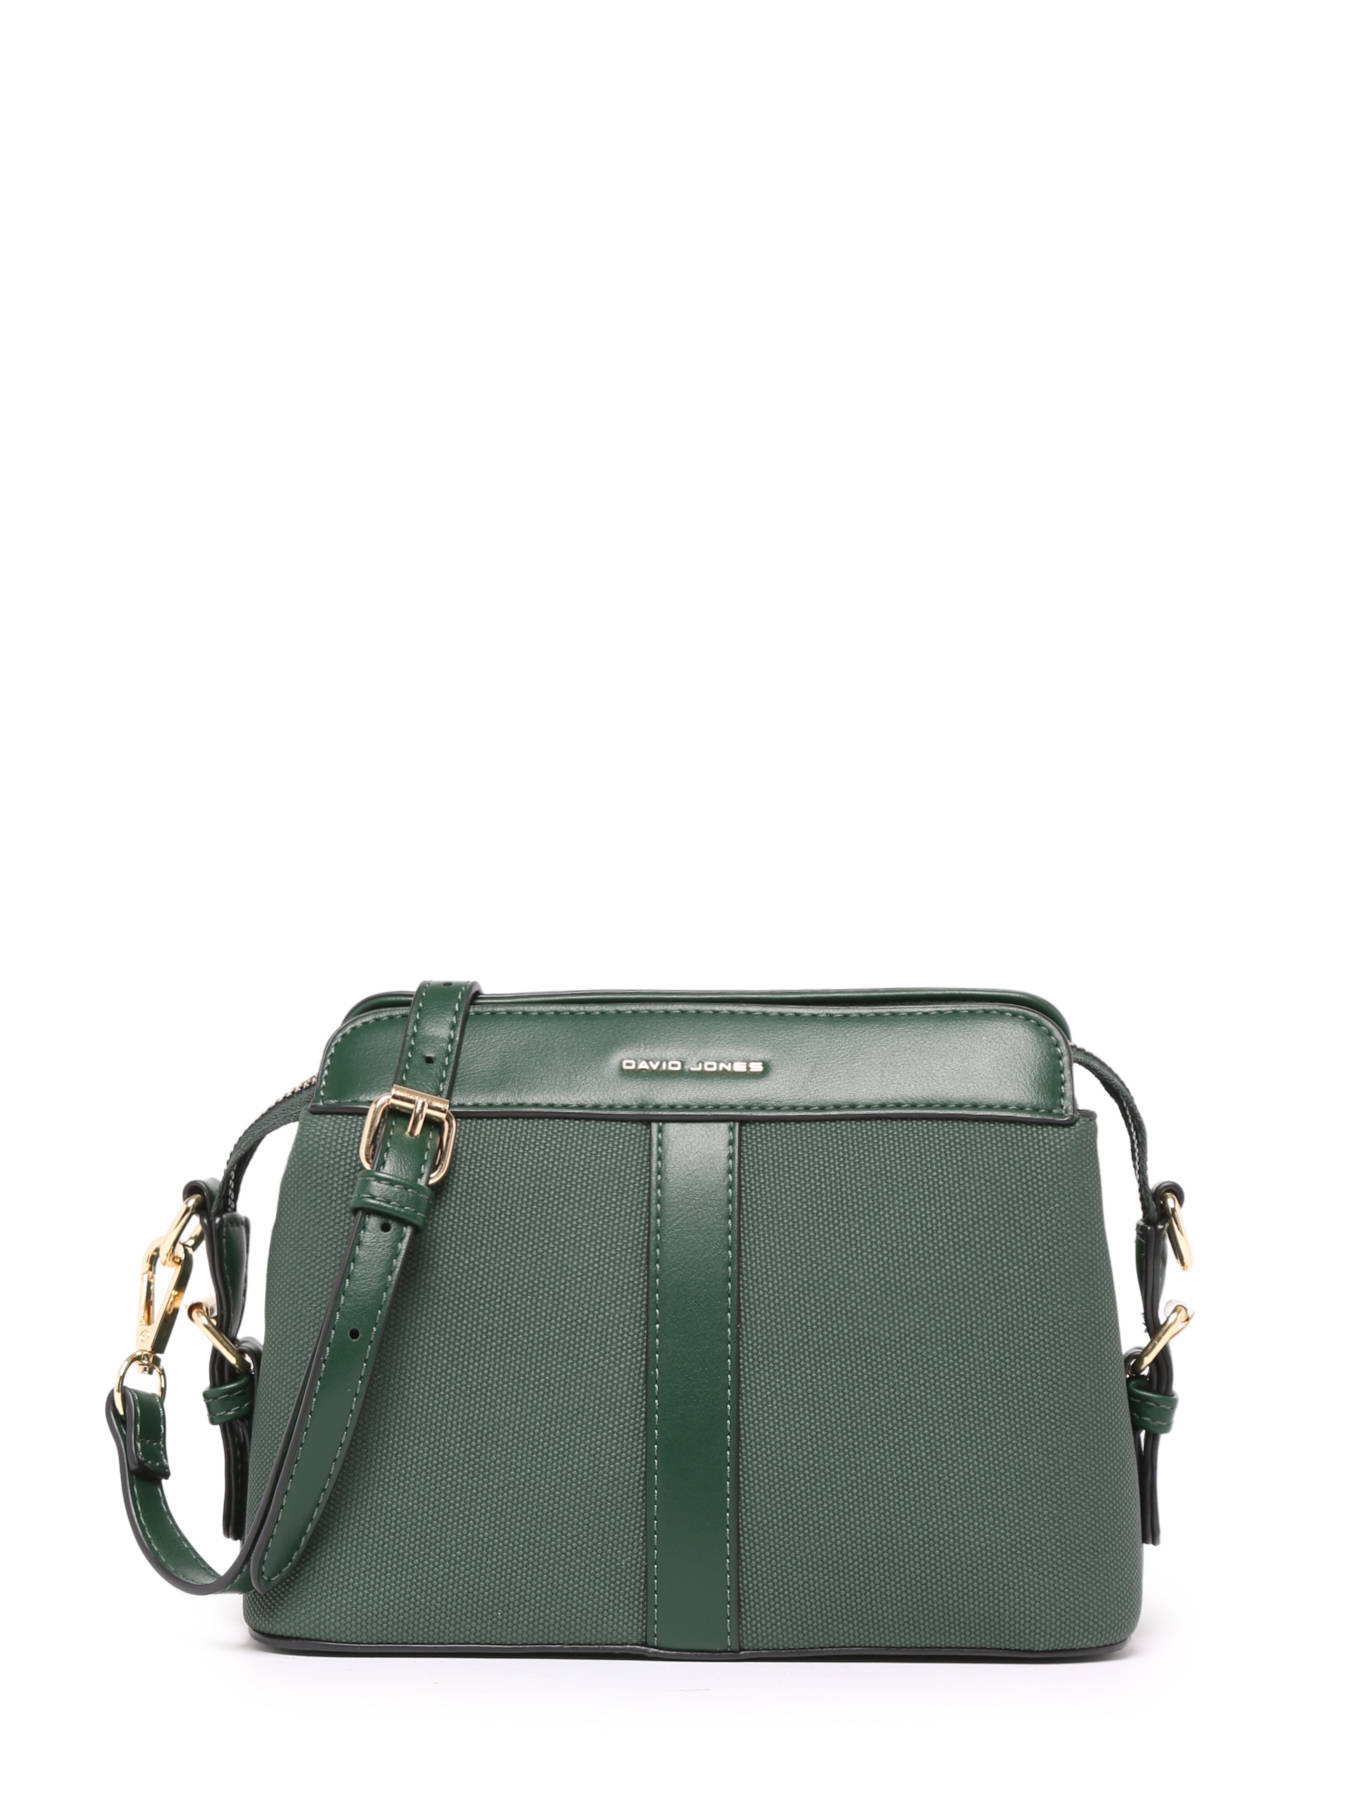 Shop David Jones Olive Green Handbag - 6812-1